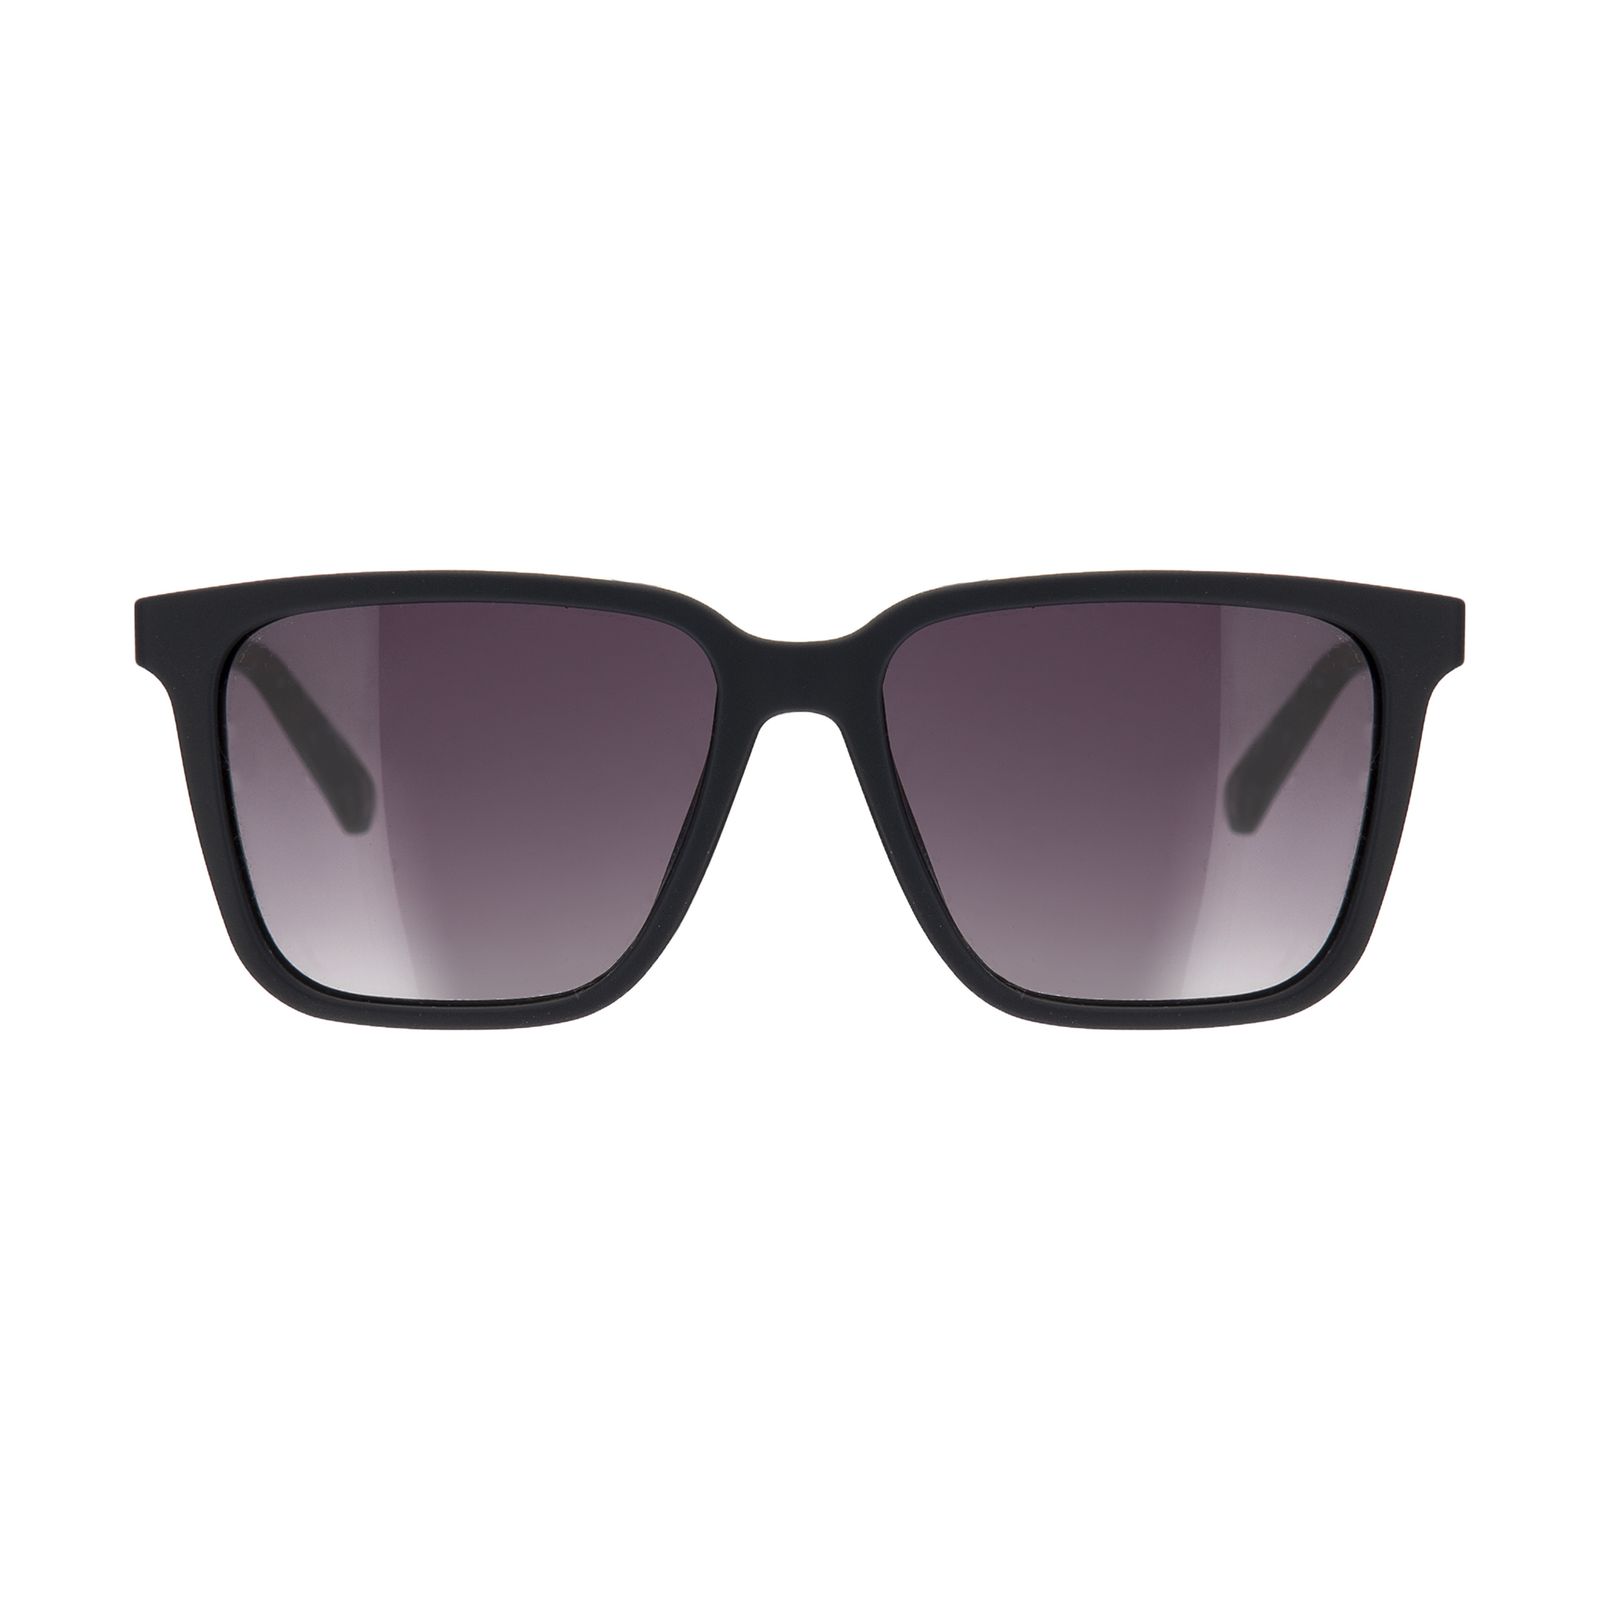 عینک آفتابی مردانه تد بیکر مدل TB 1533 618 -  - 1